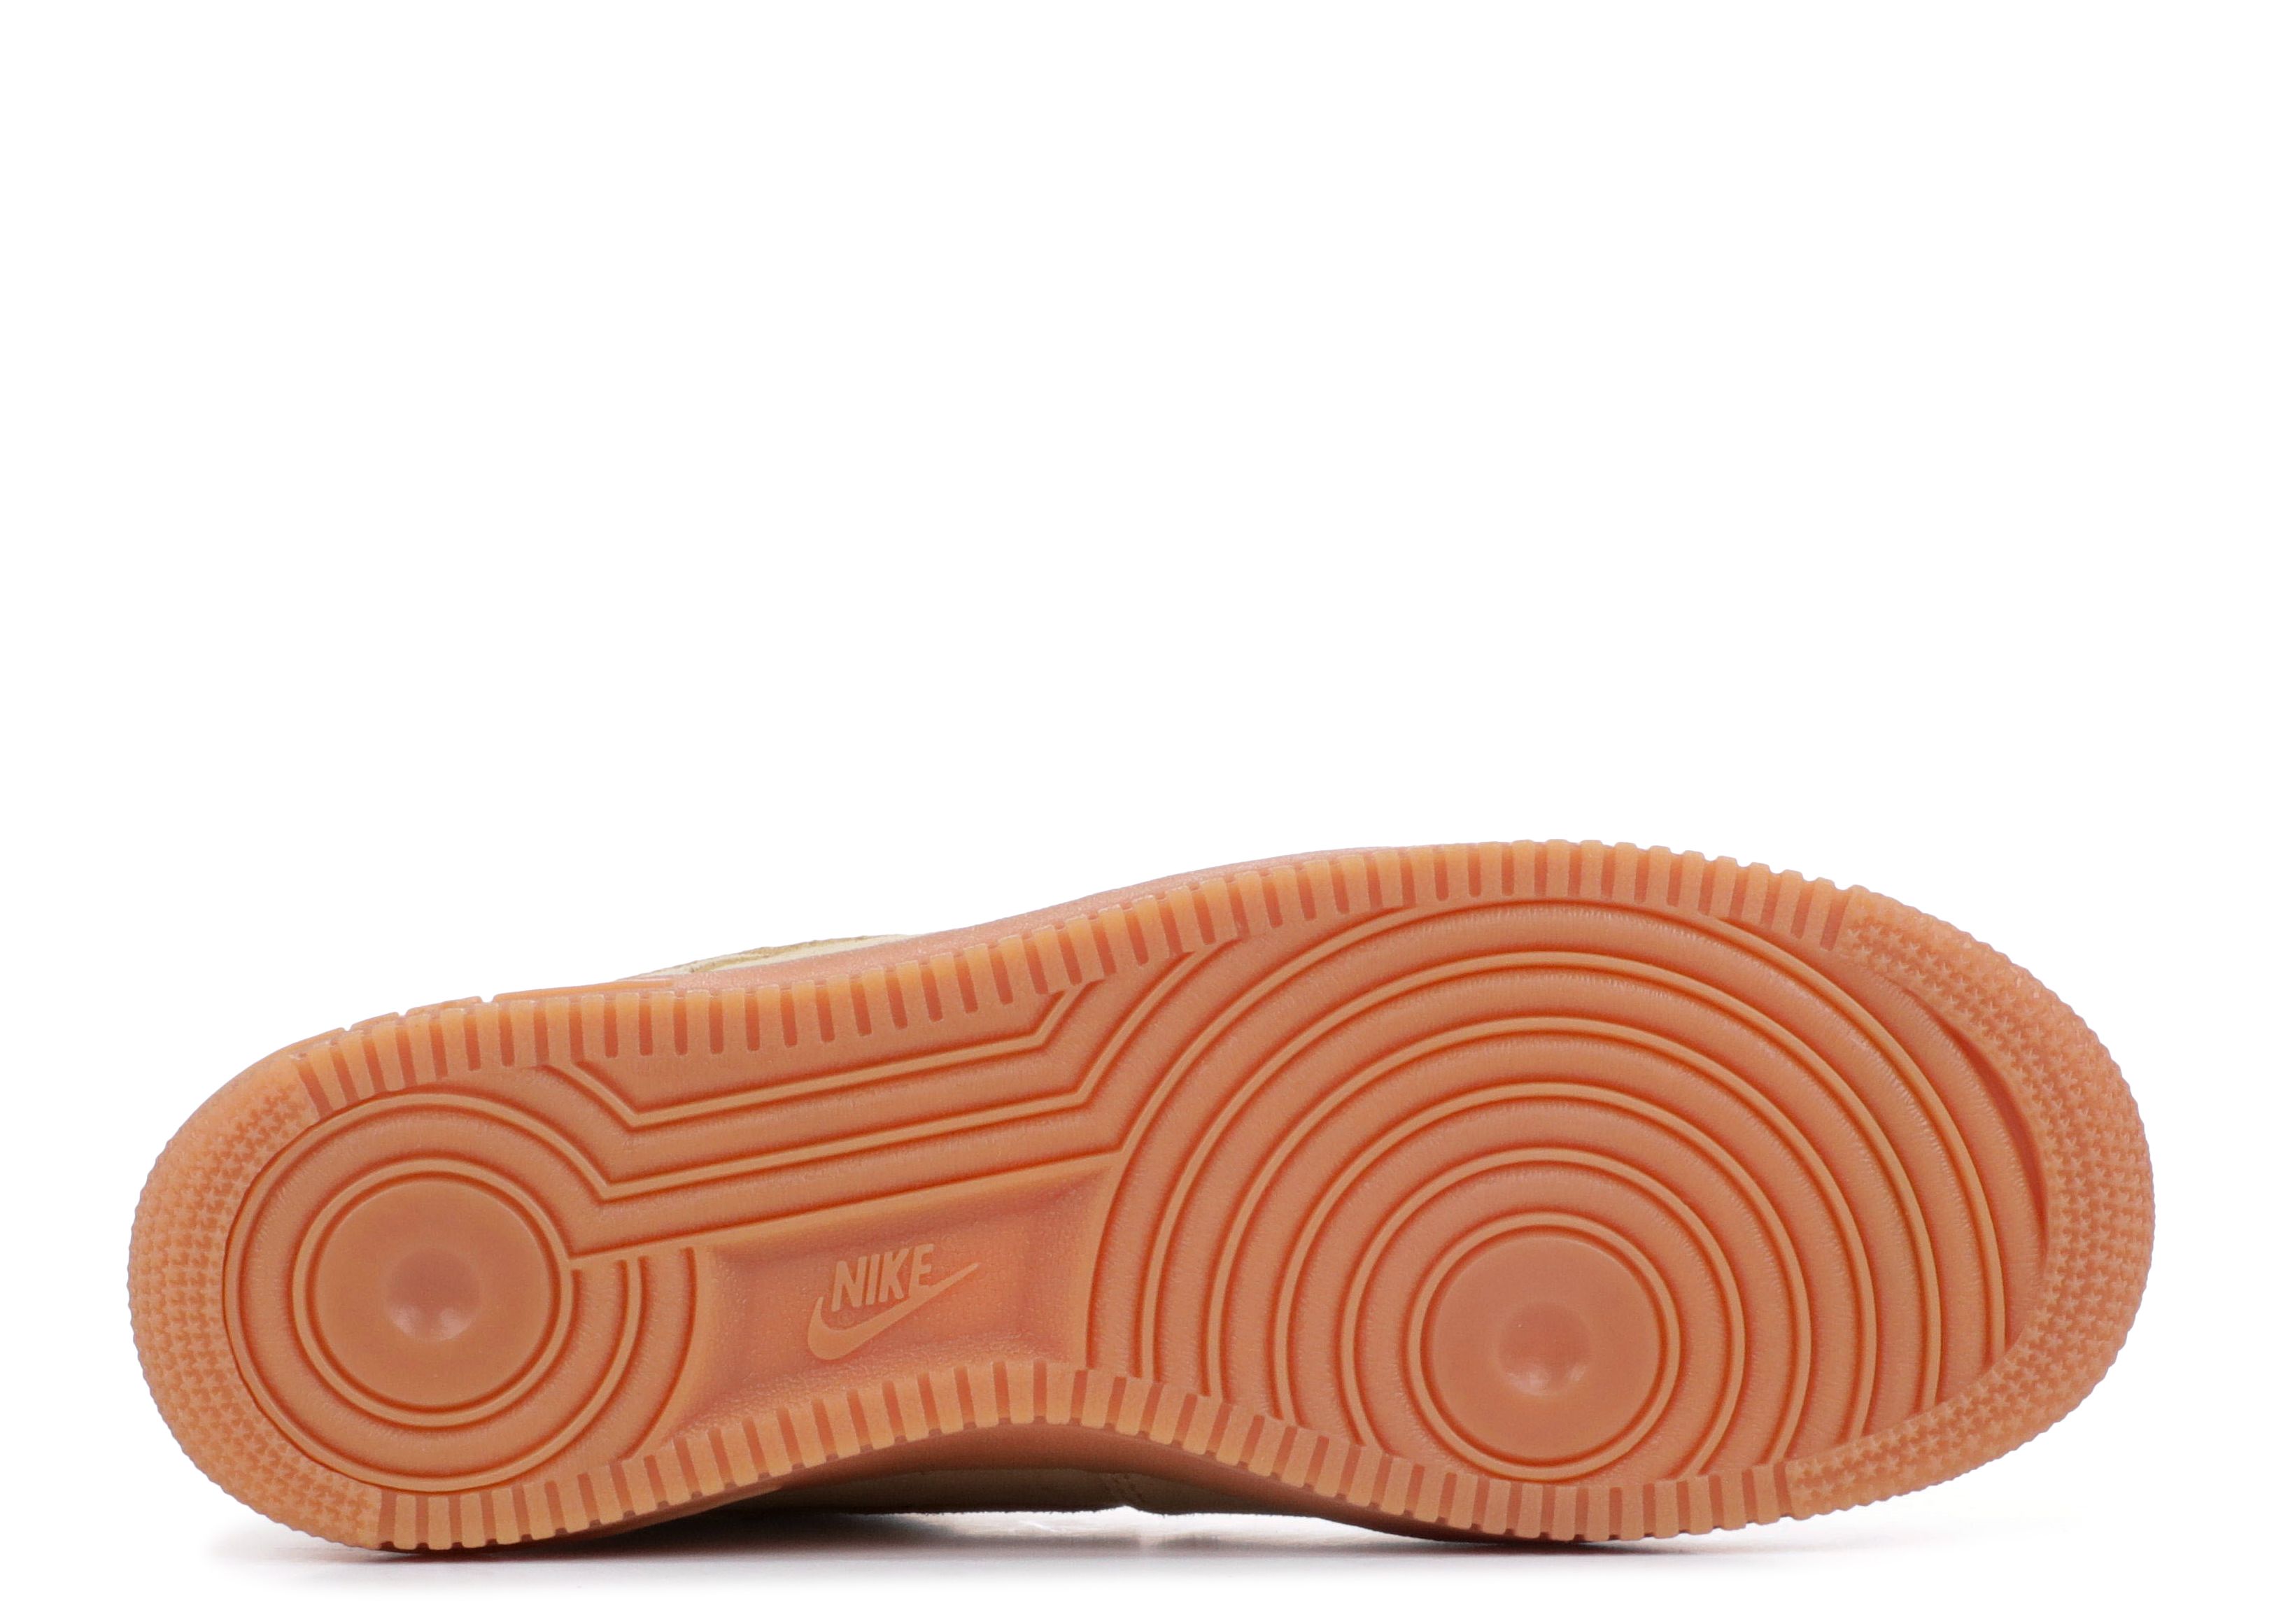 Nike Air Force 1 '07 LV8 Suede Women's Mushroom Gum Sneakers